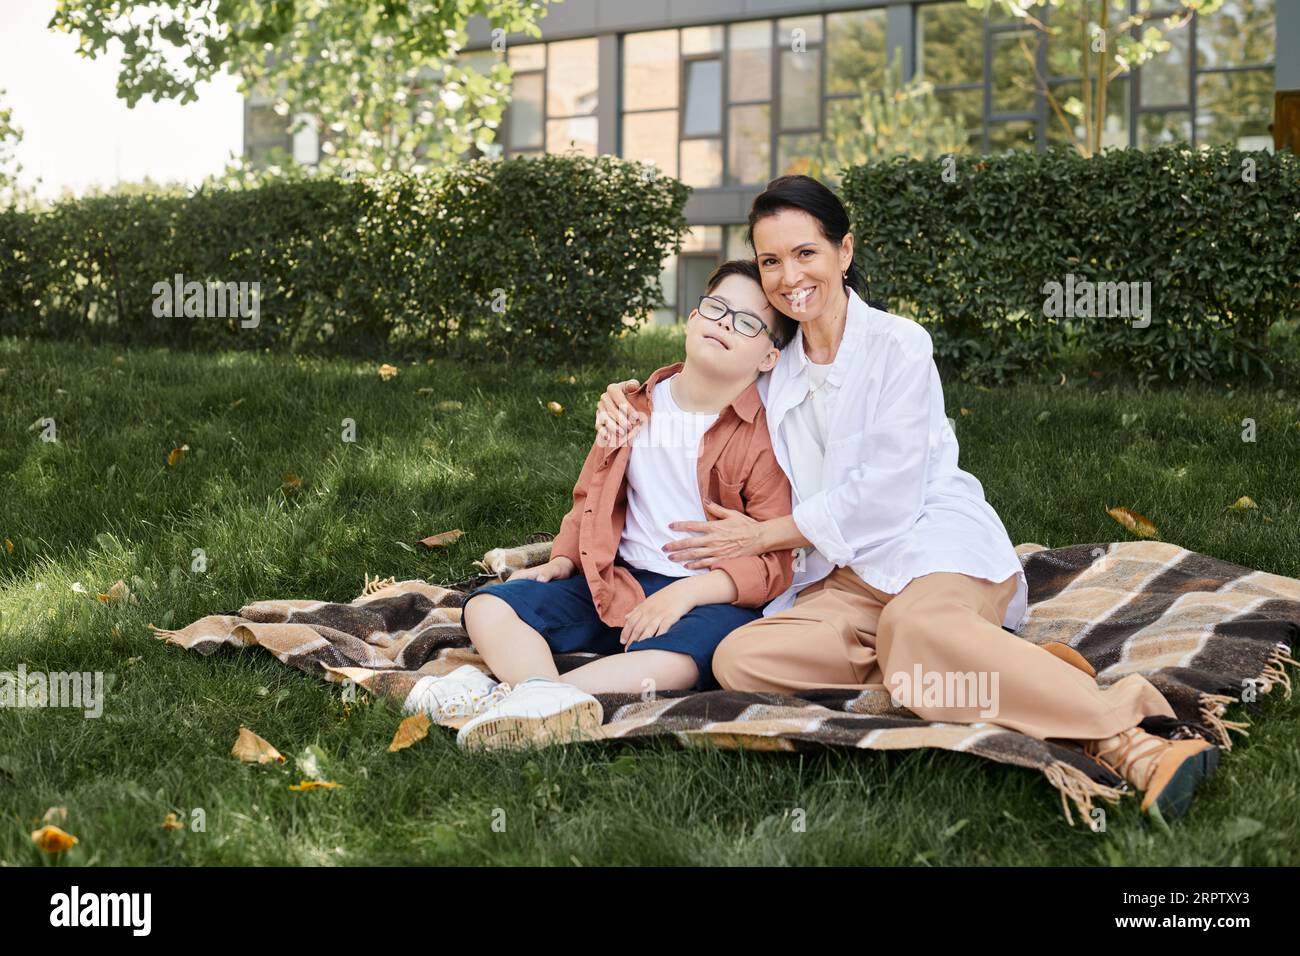 Eine lächelnde Frau mittleren Alters, die einen jungen Sohn mit Down-Syndrom auf einer Decke im Park umarmt, gute Zeit Stockfoto